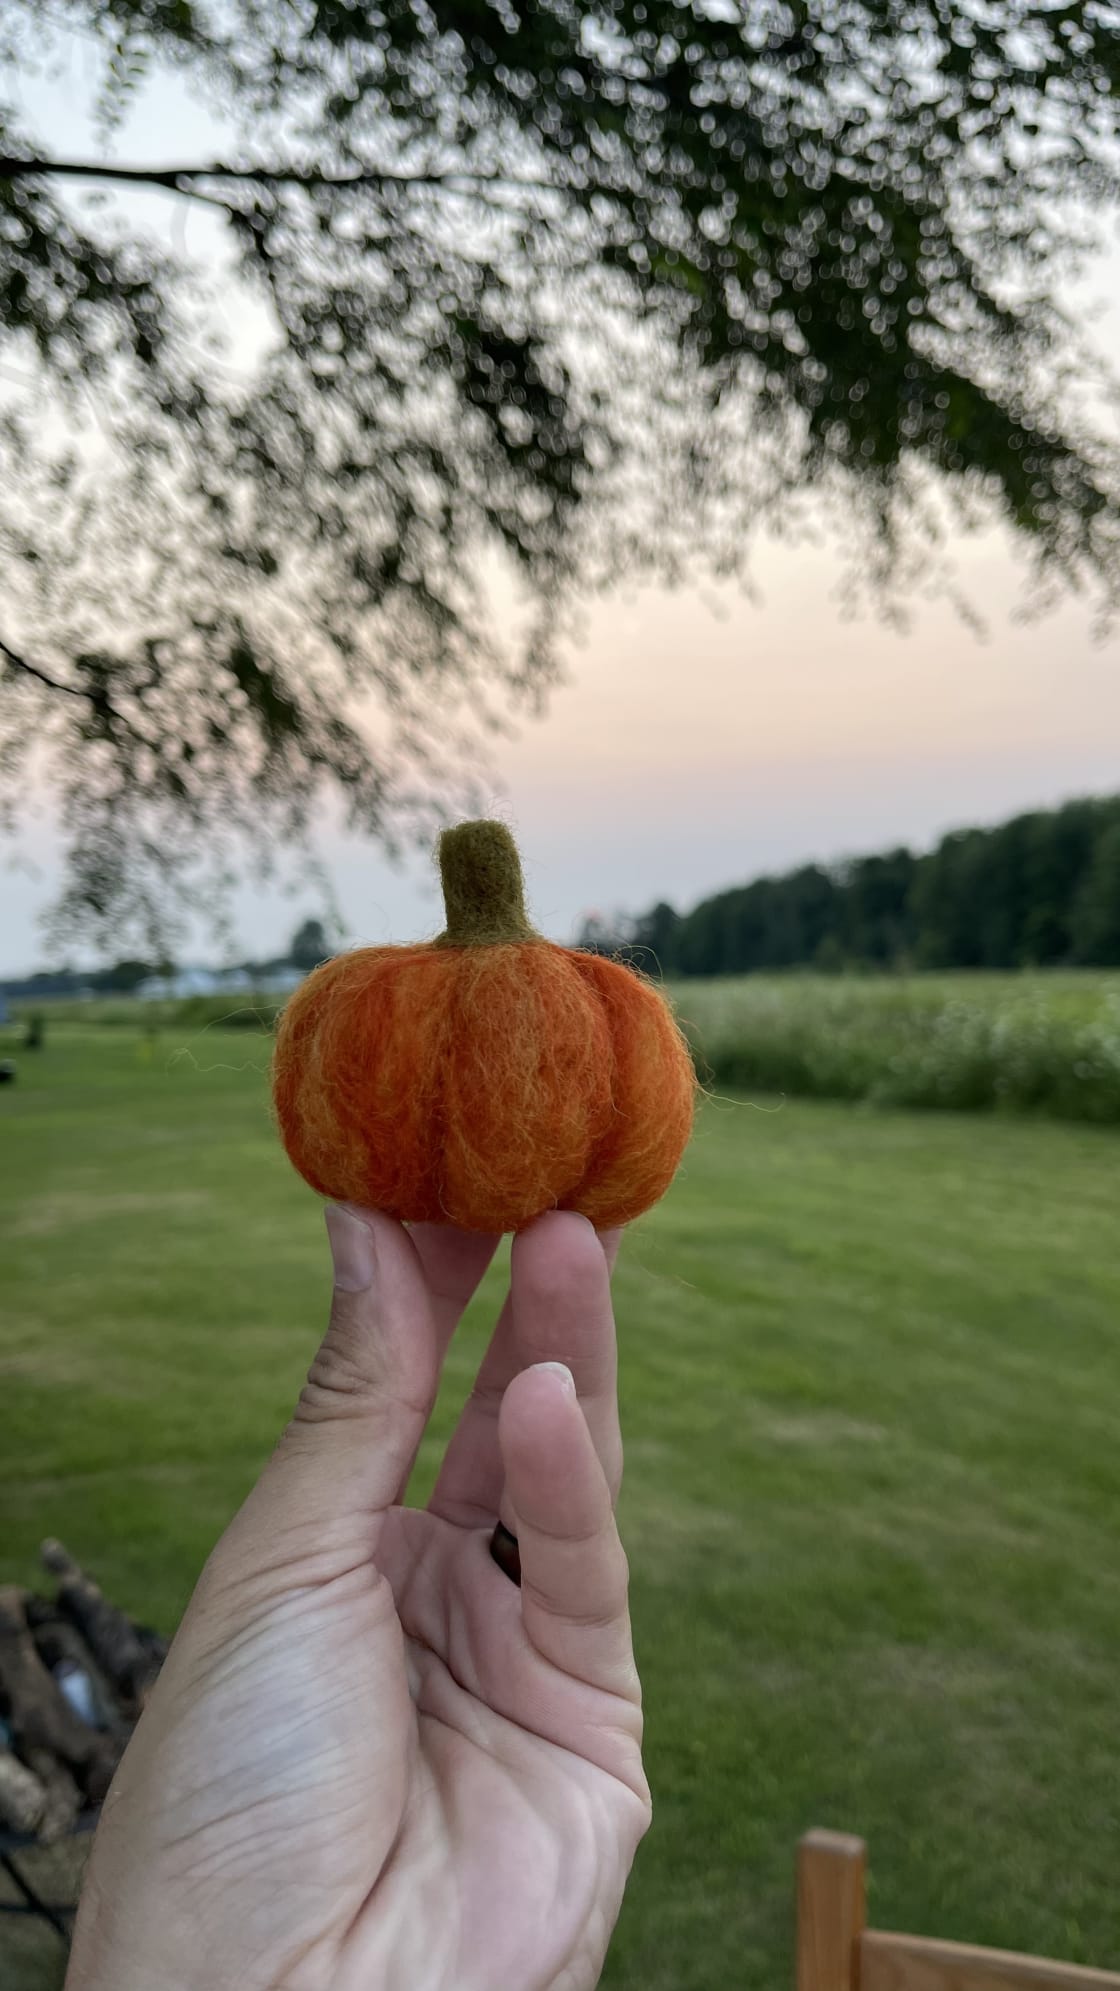 Pumpkin dreams